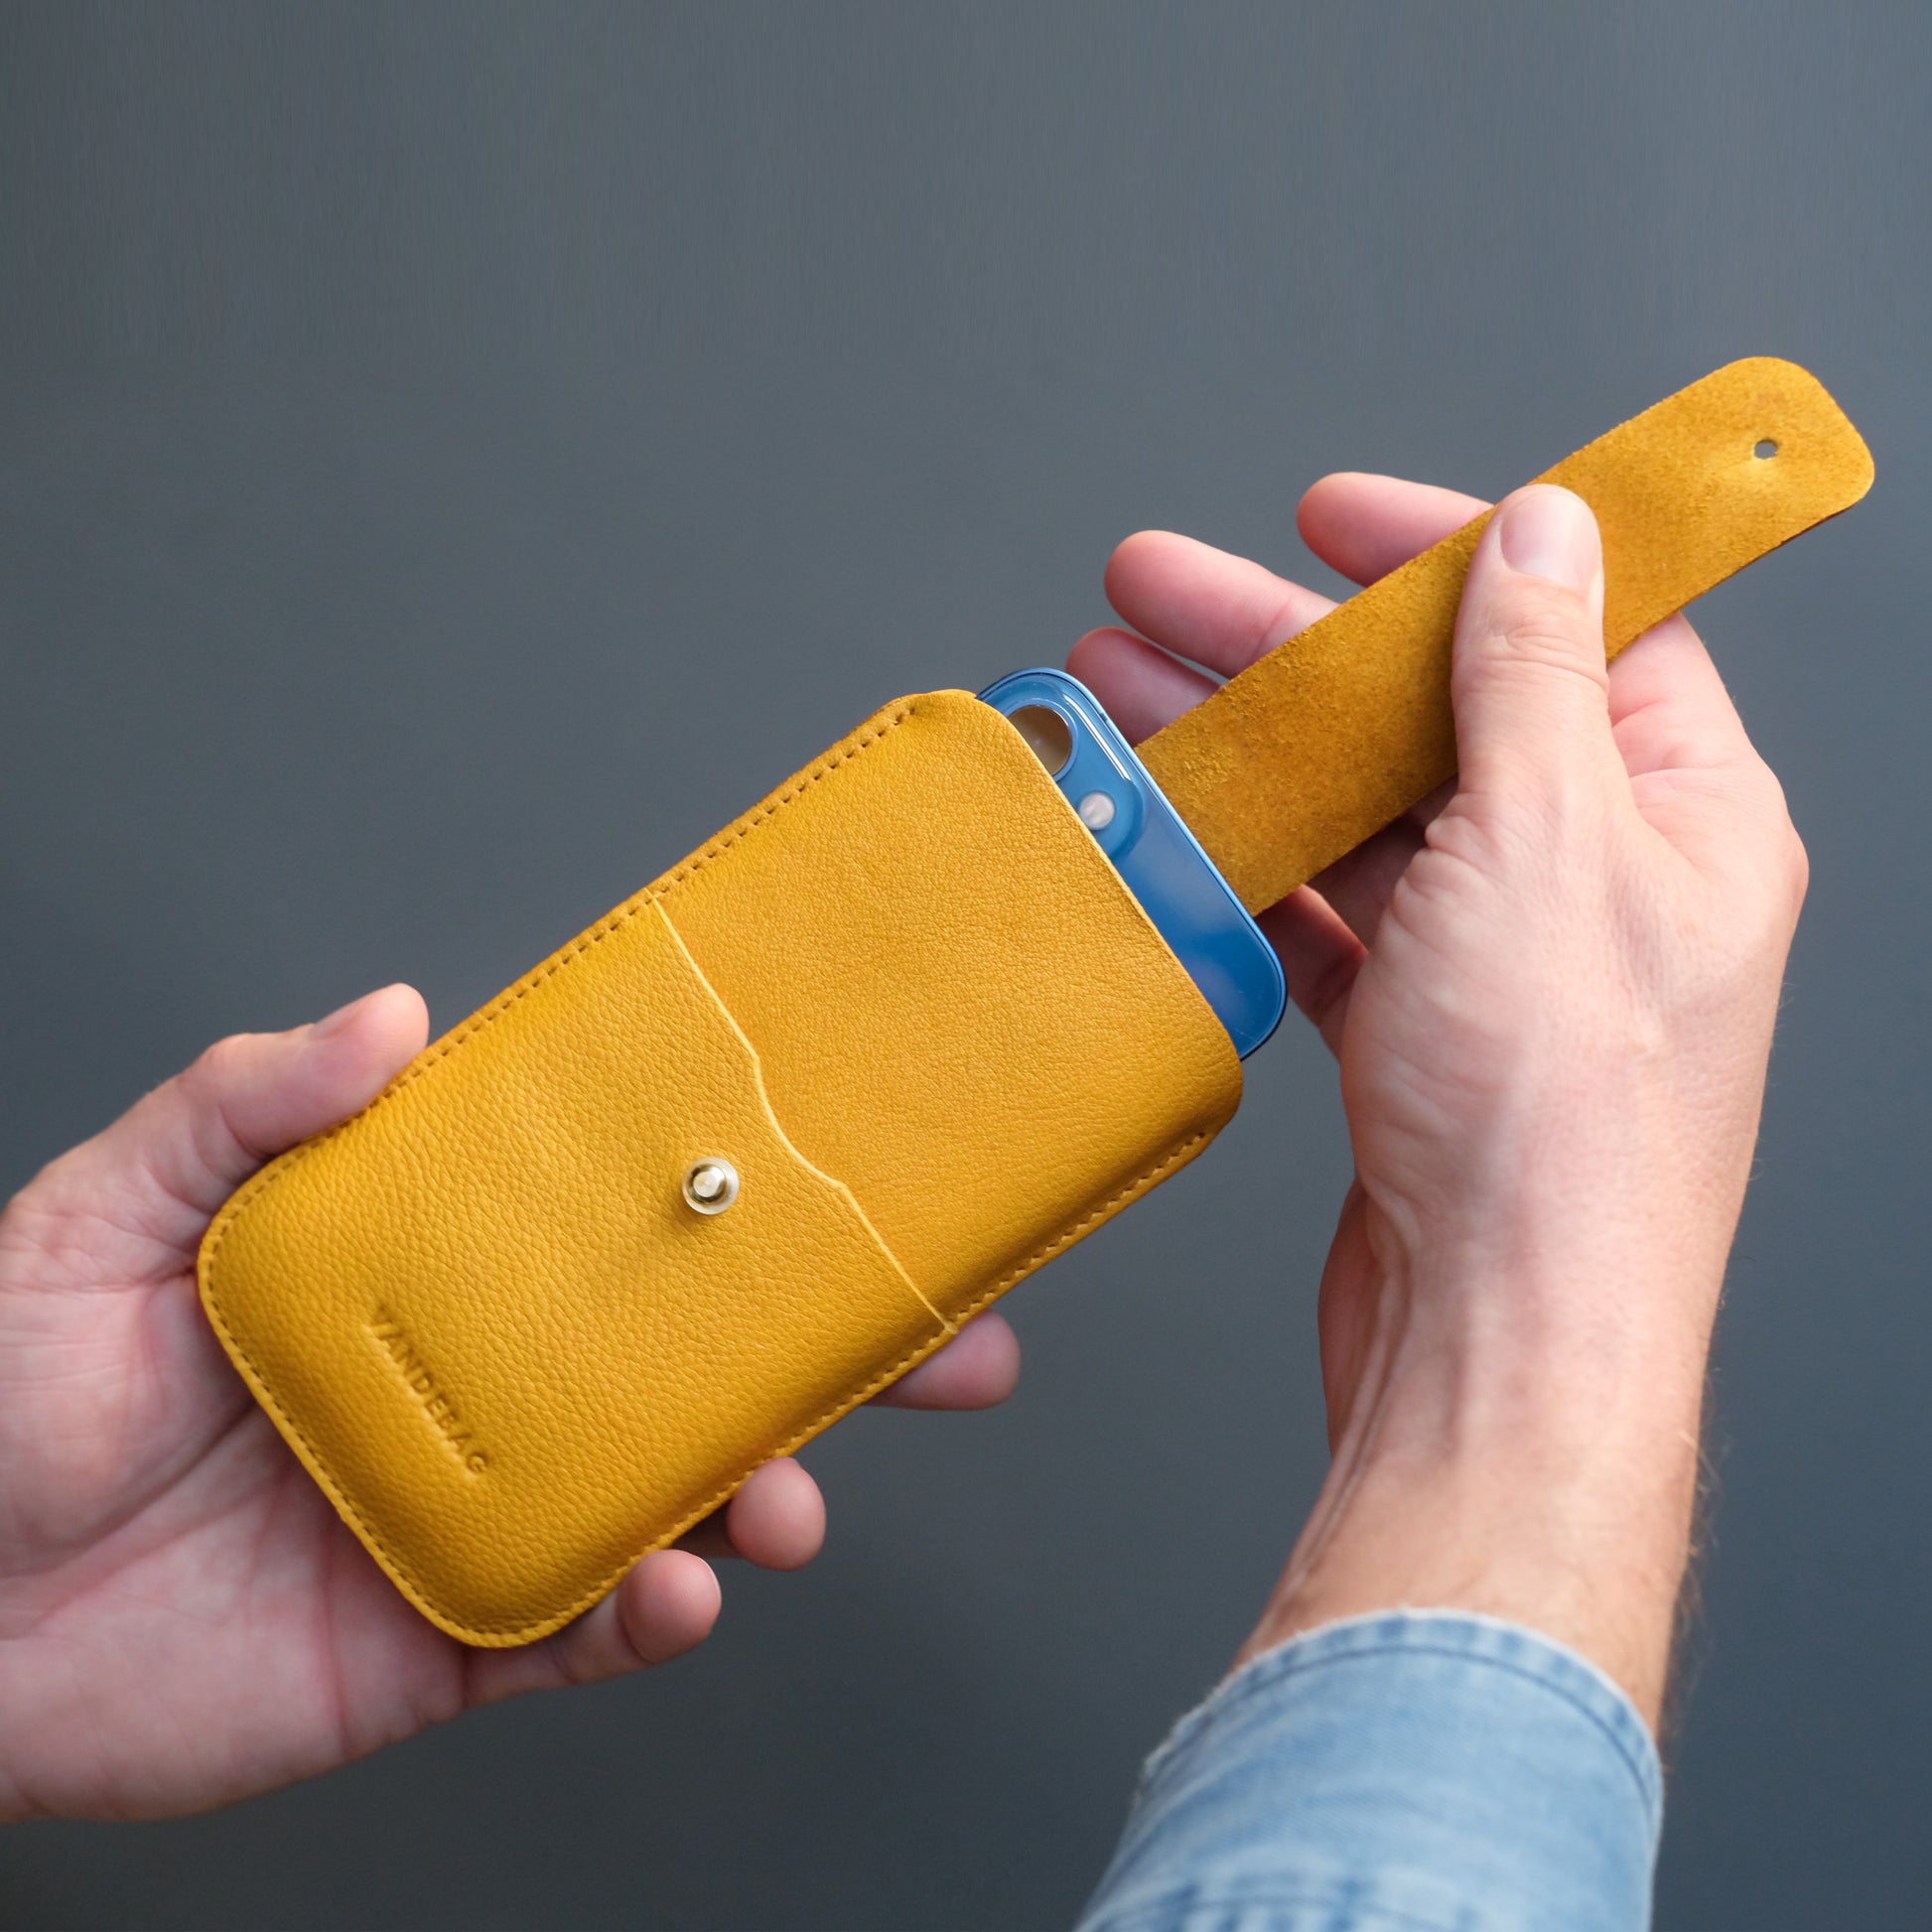 Handy wird an verschlusslasche aus dem gelben Case gezogen